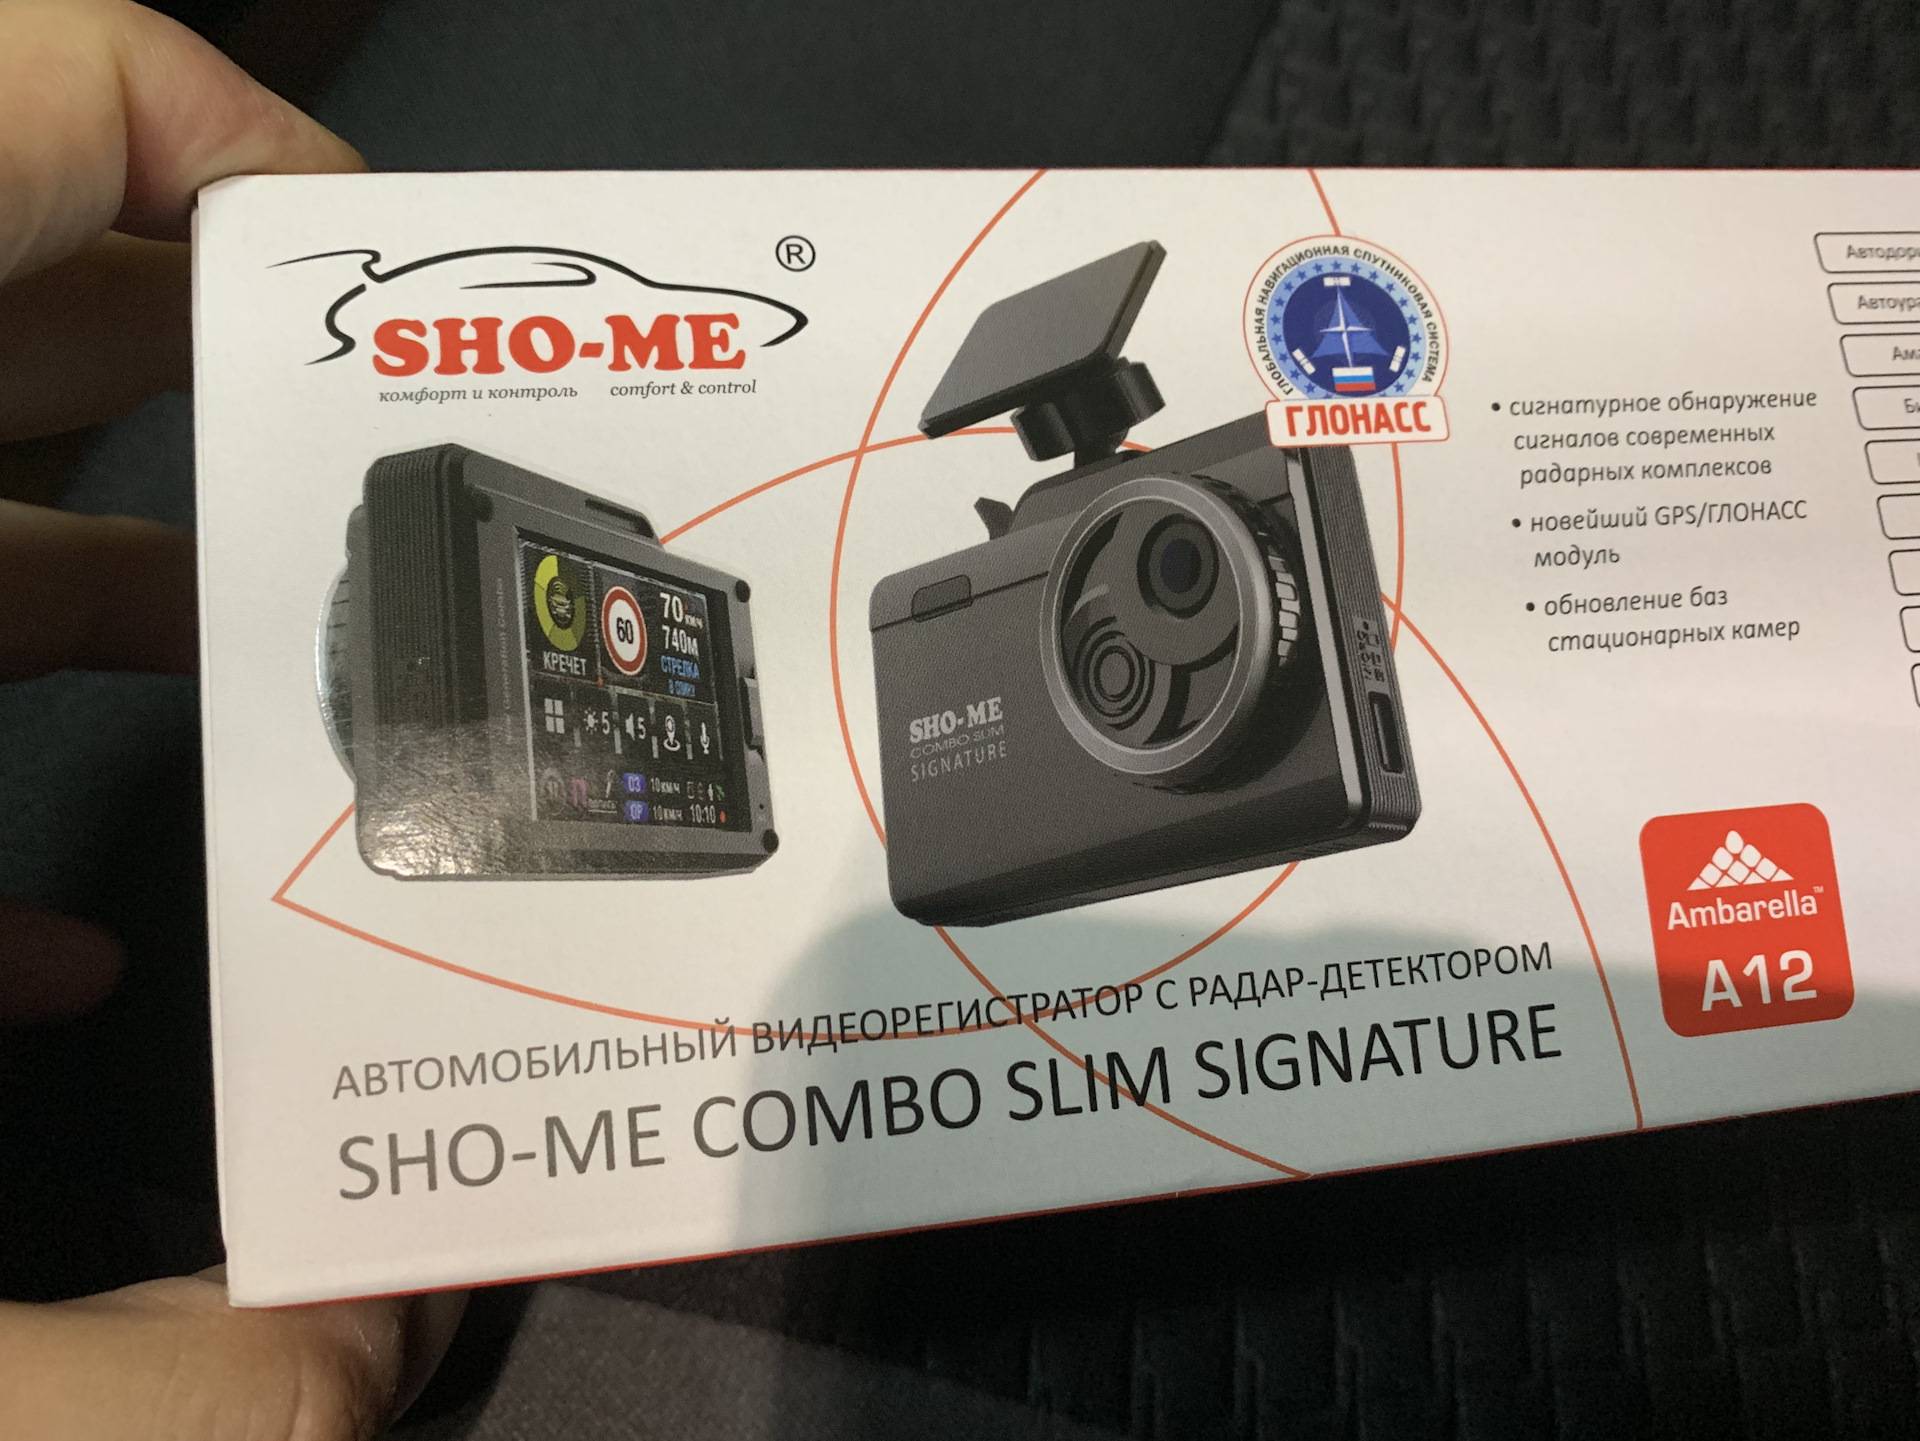 Sho-me combo smart signature. мой честный отзыв